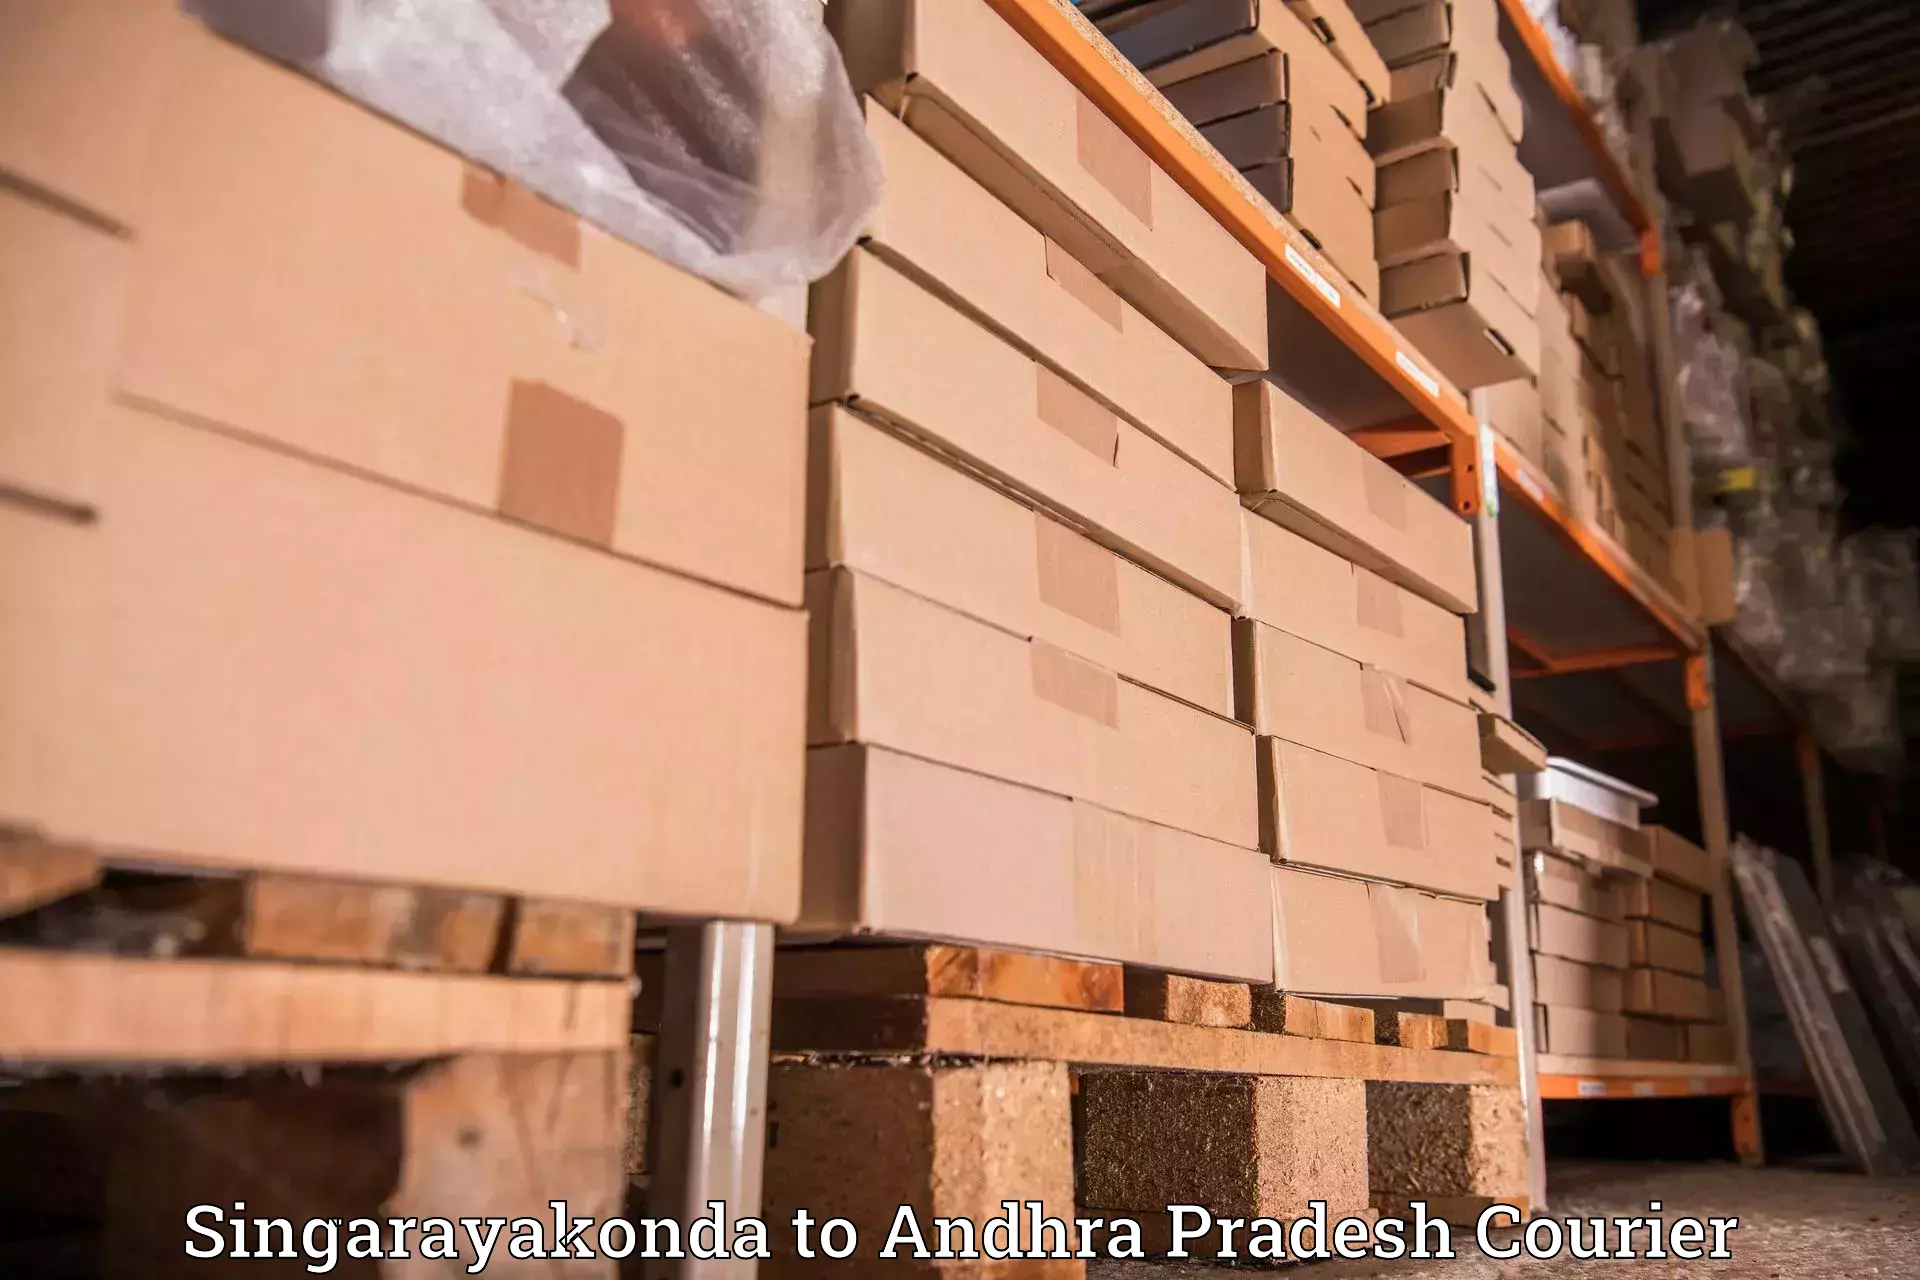 Door-to-door freight service Singarayakonda to IIT Tirupati